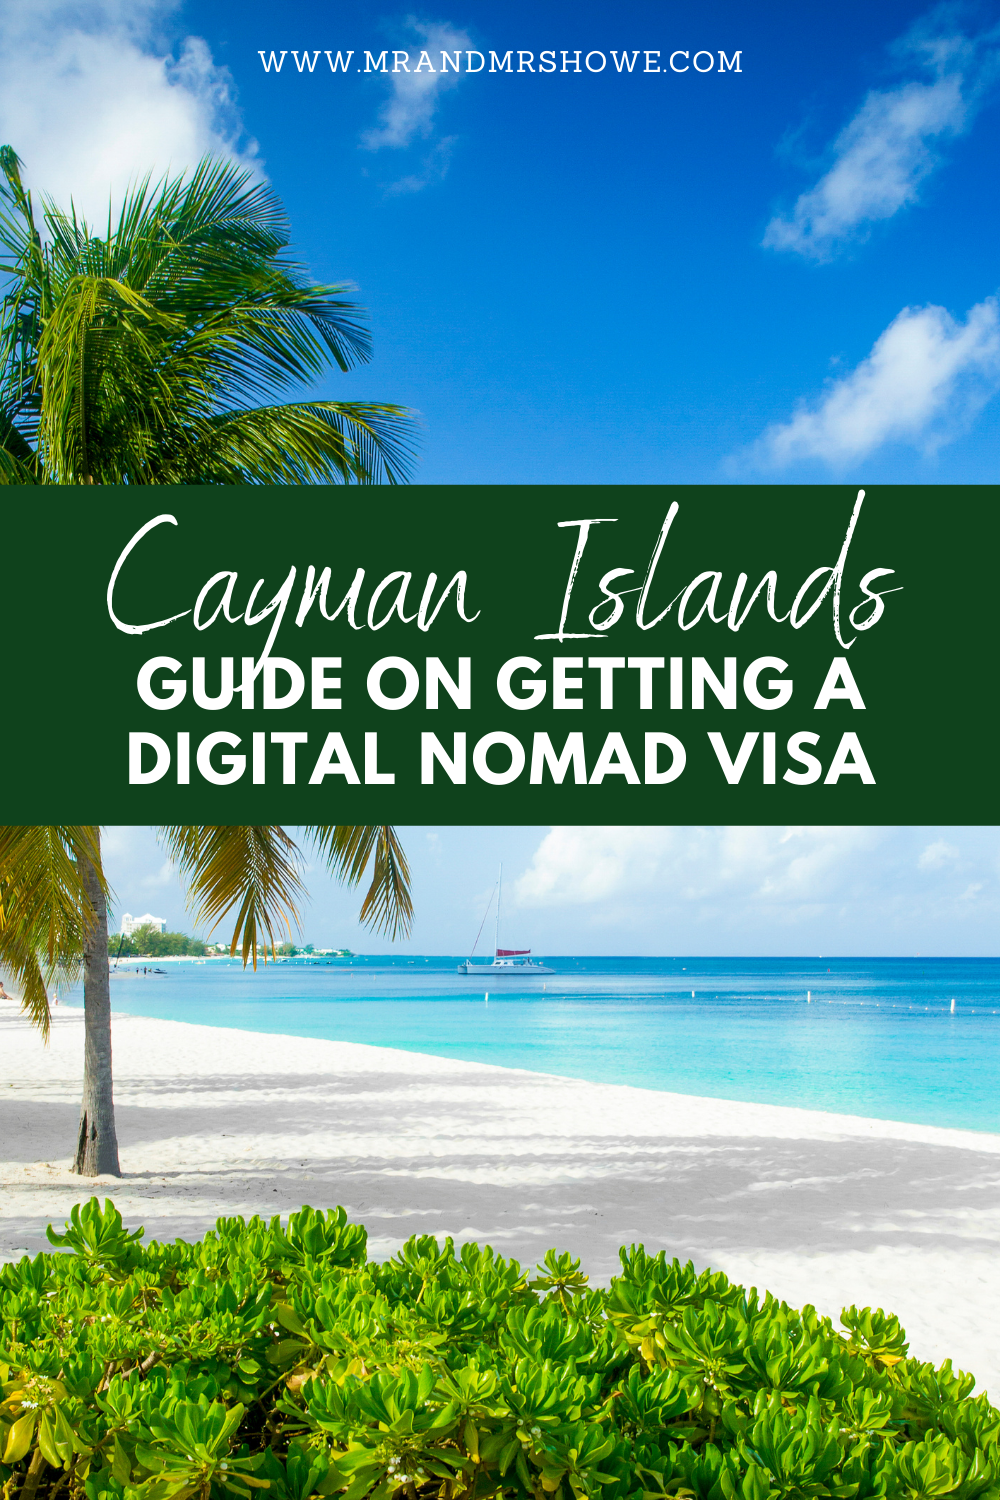 Guide on Getting a Cayman Islands Digital Nomad Visa (Global Citizen Concierge Program)2.png